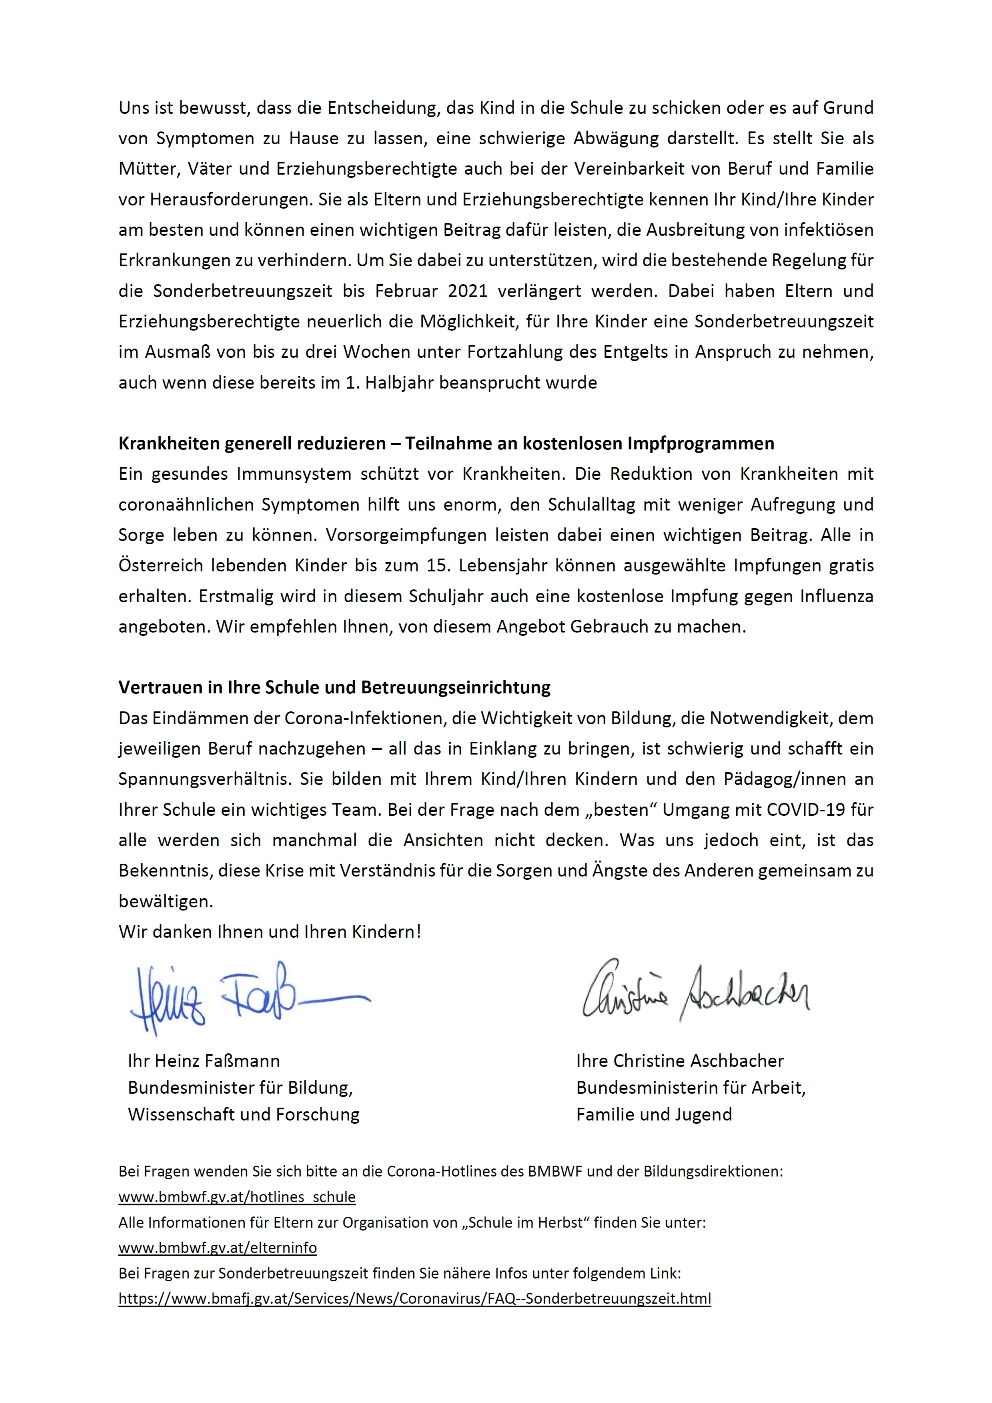 Elternbrief BM Fassmann Aschbacher Sep 2020 seite2